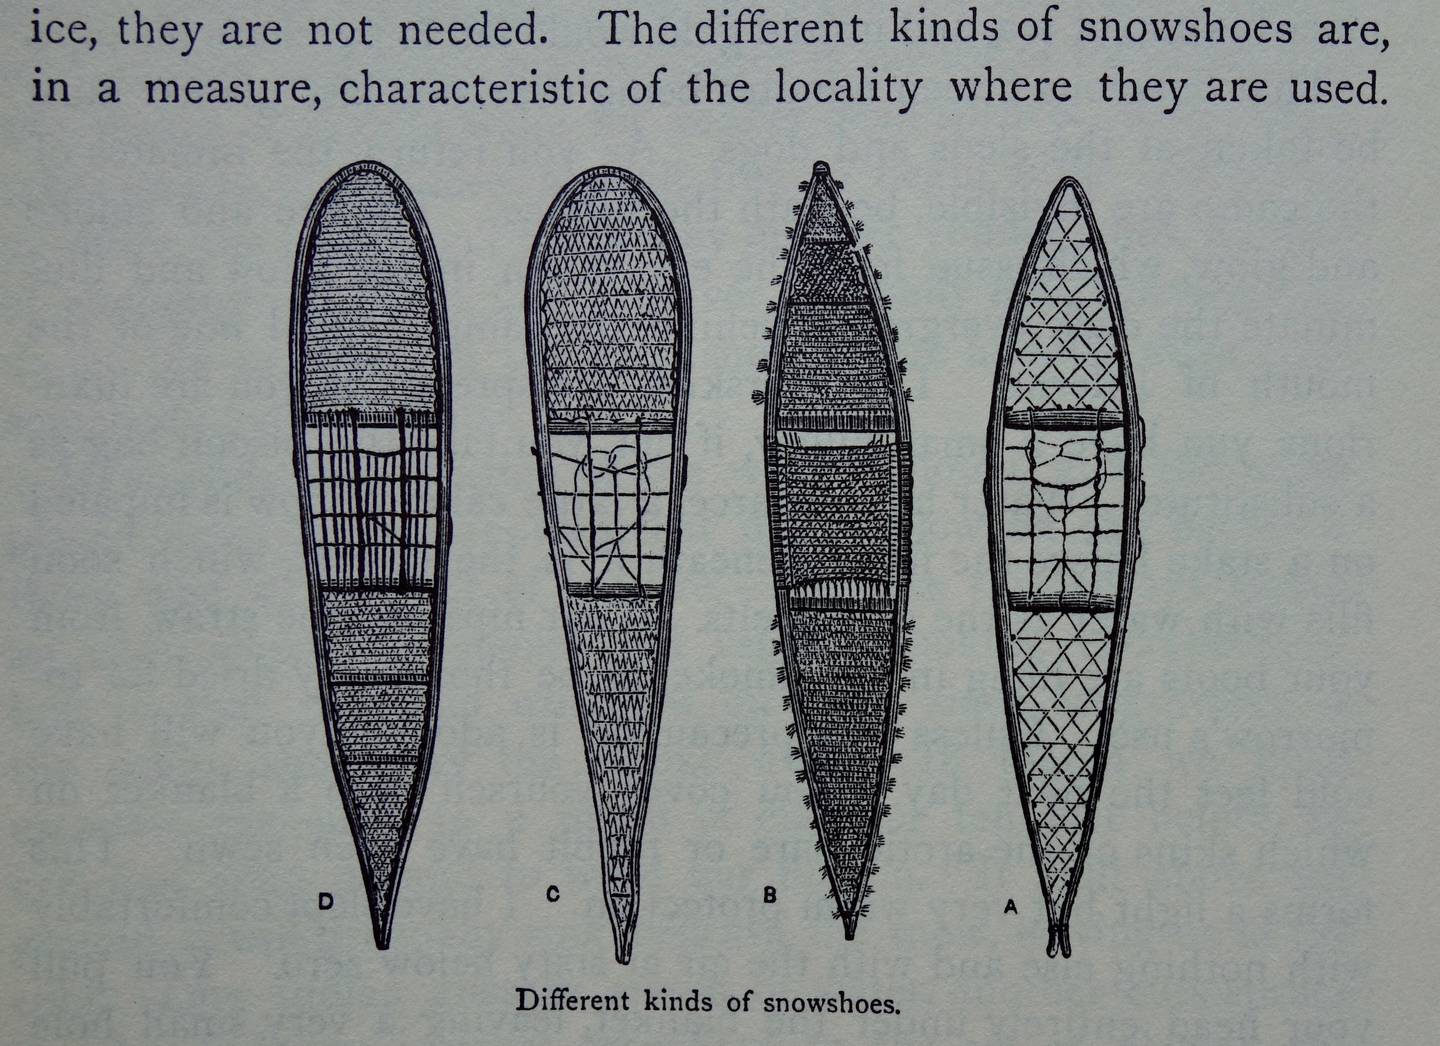 Schița lui William Dall cu rachetele de zăpadă pe care le-a văzut folosite în Alaska